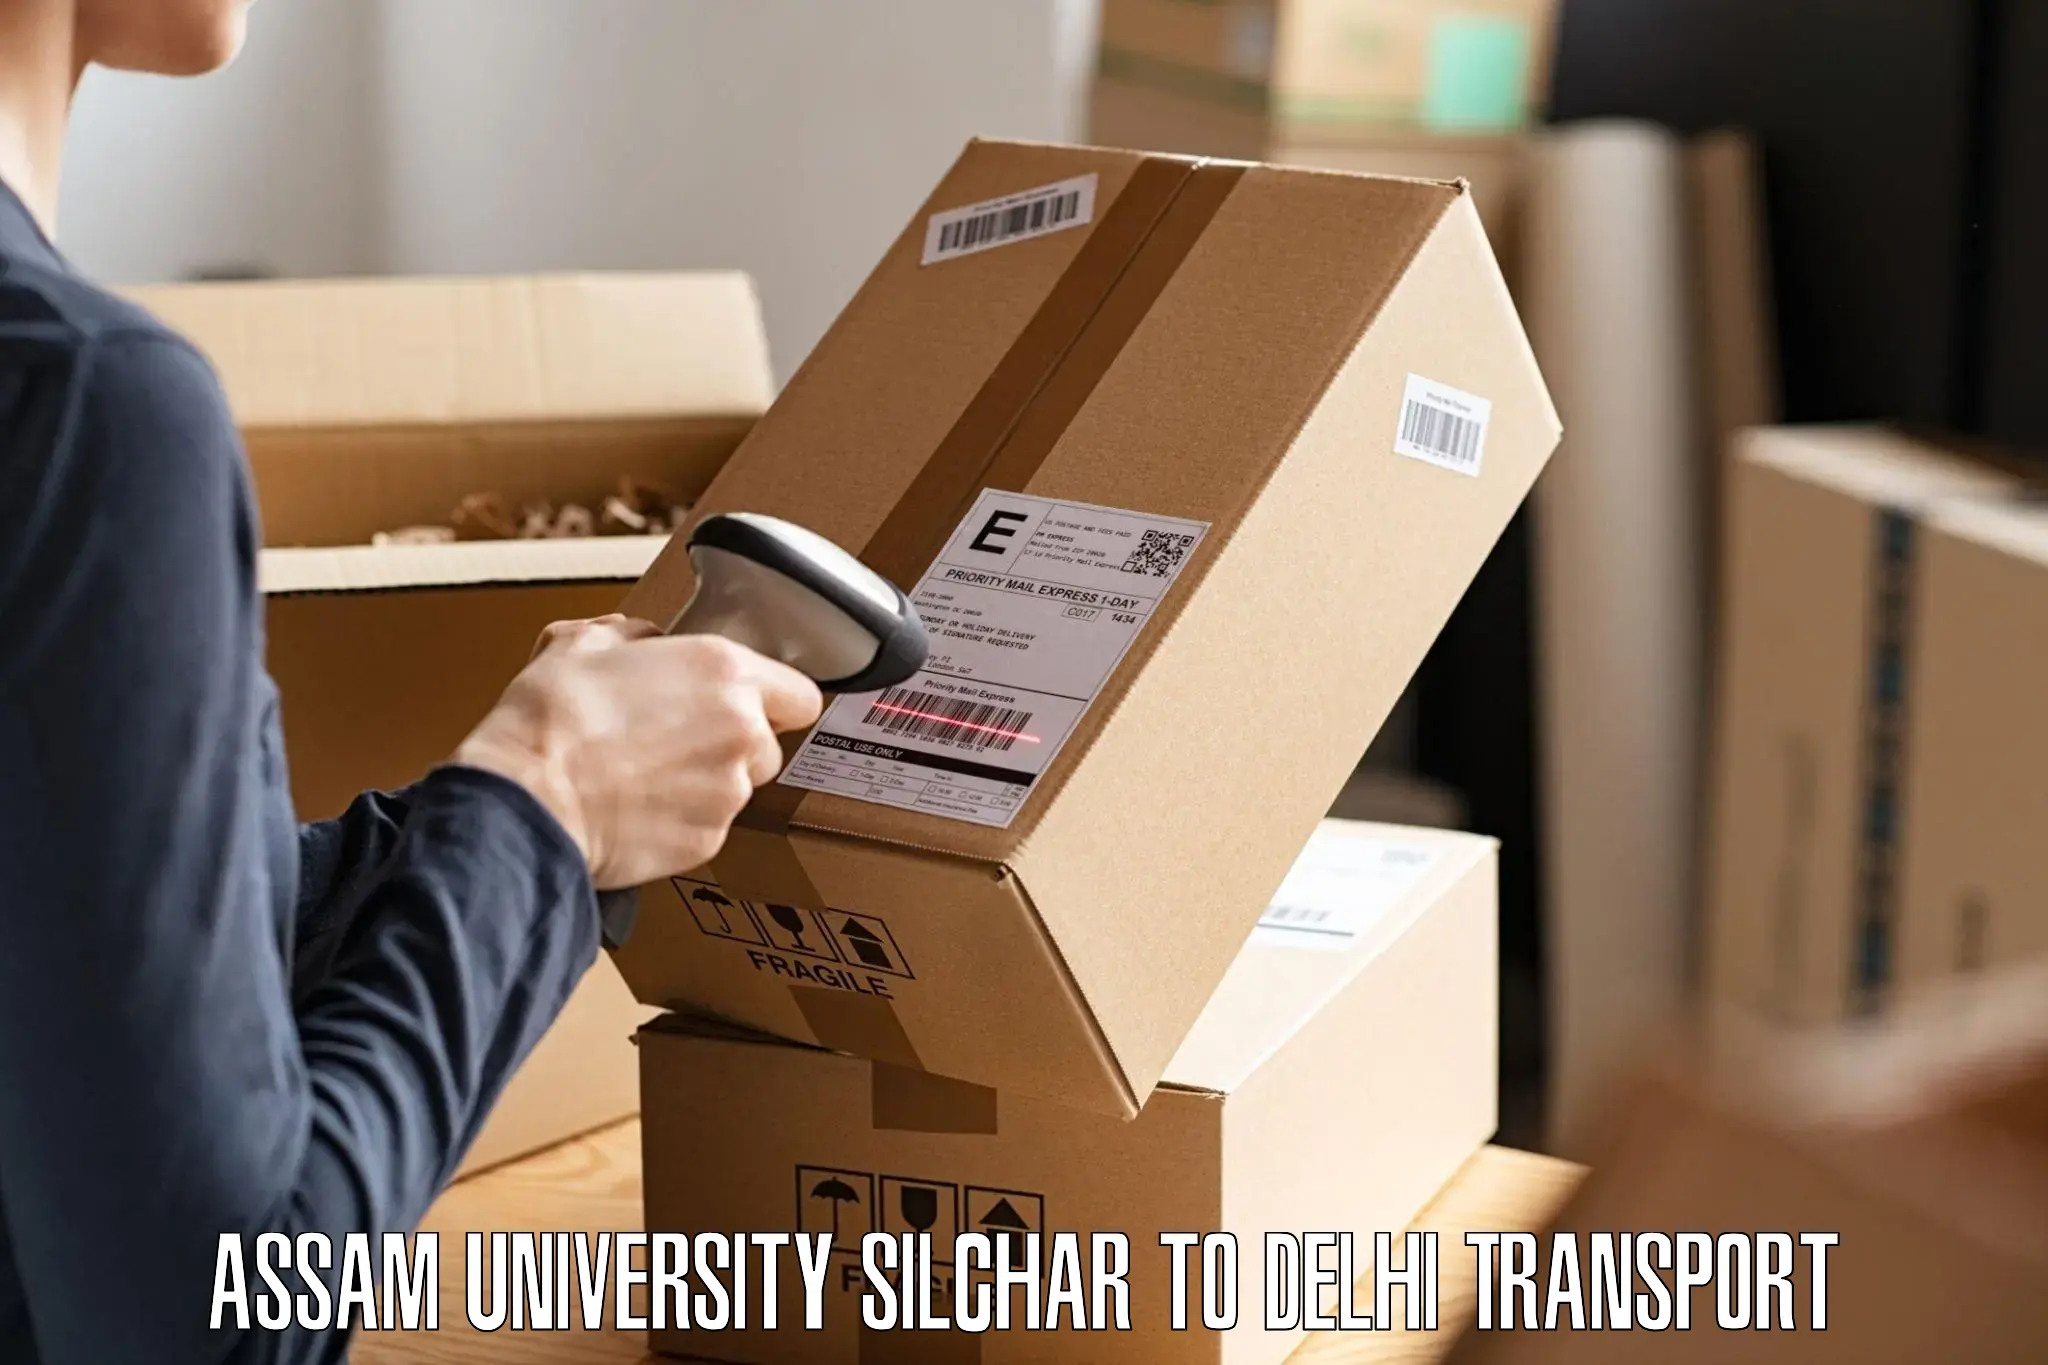 Pick up transport service Assam University Silchar to NCR